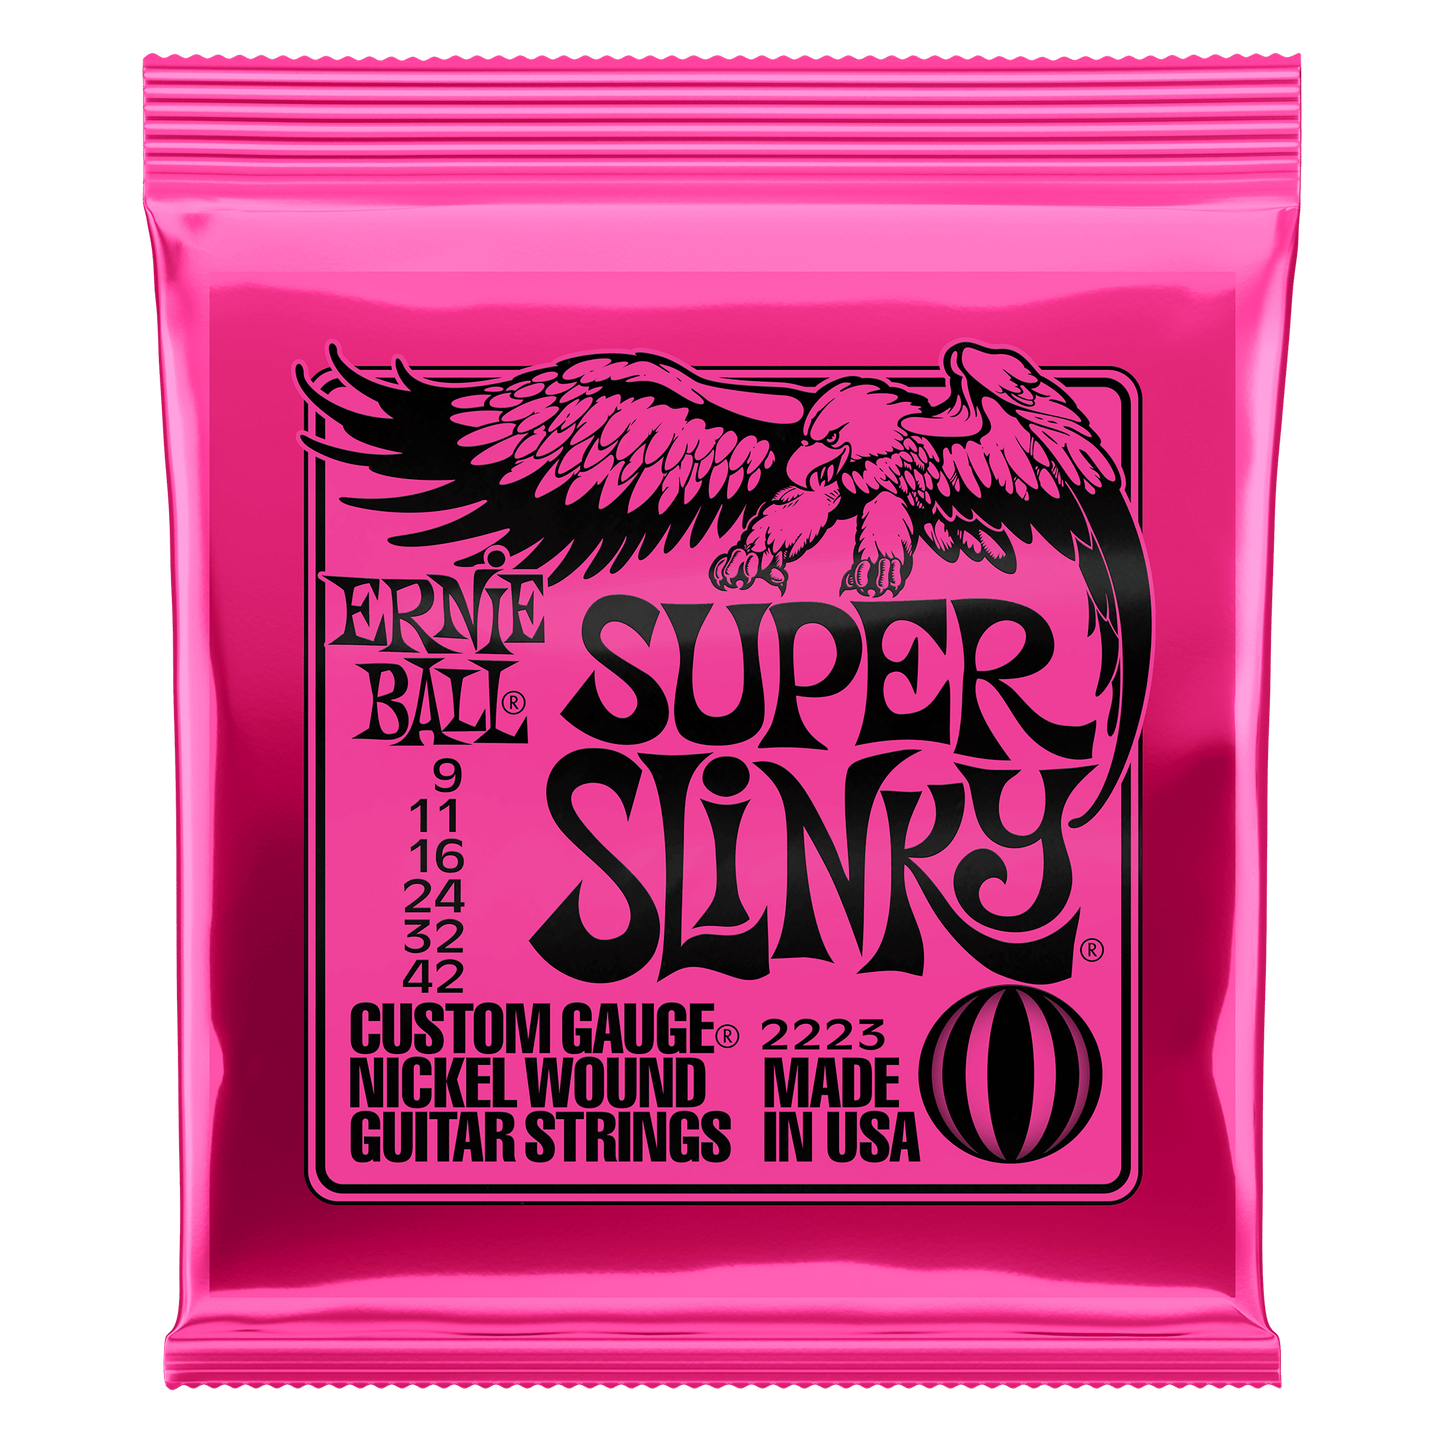 Super Slinky Nickel Wound Electric Guitar Strings – 9-42 Gauge